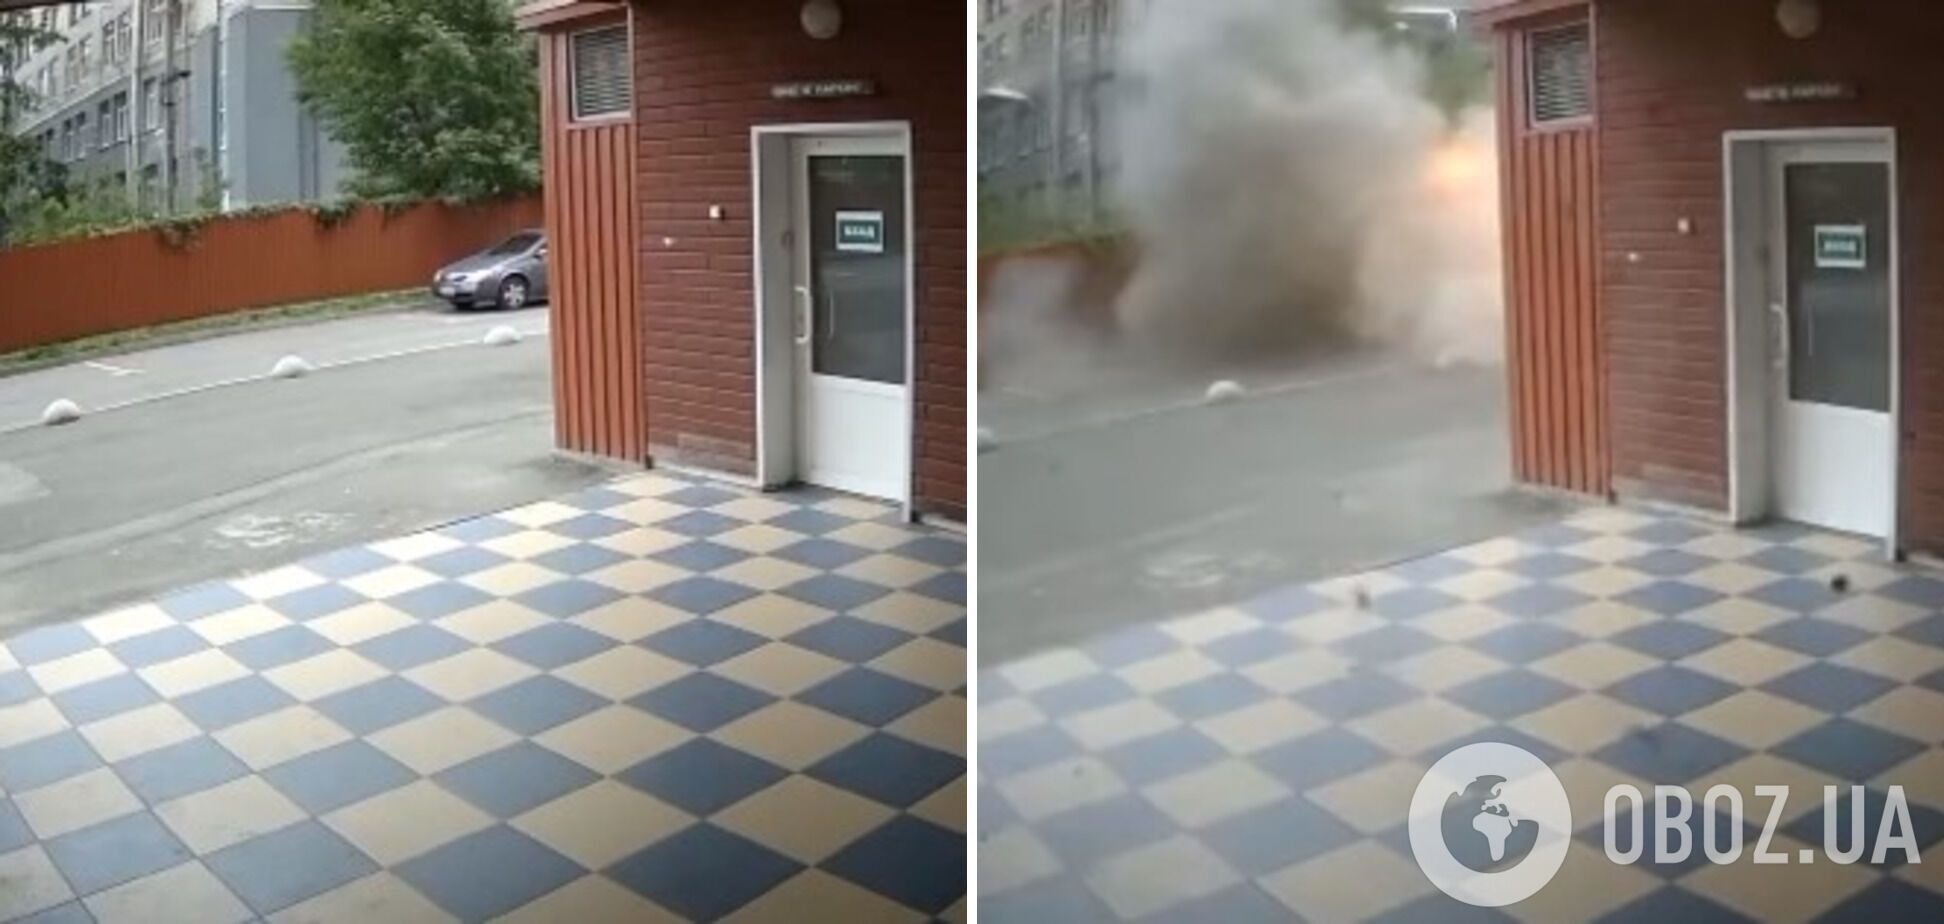 Российский снаряд попал в припаркованный автомобиль